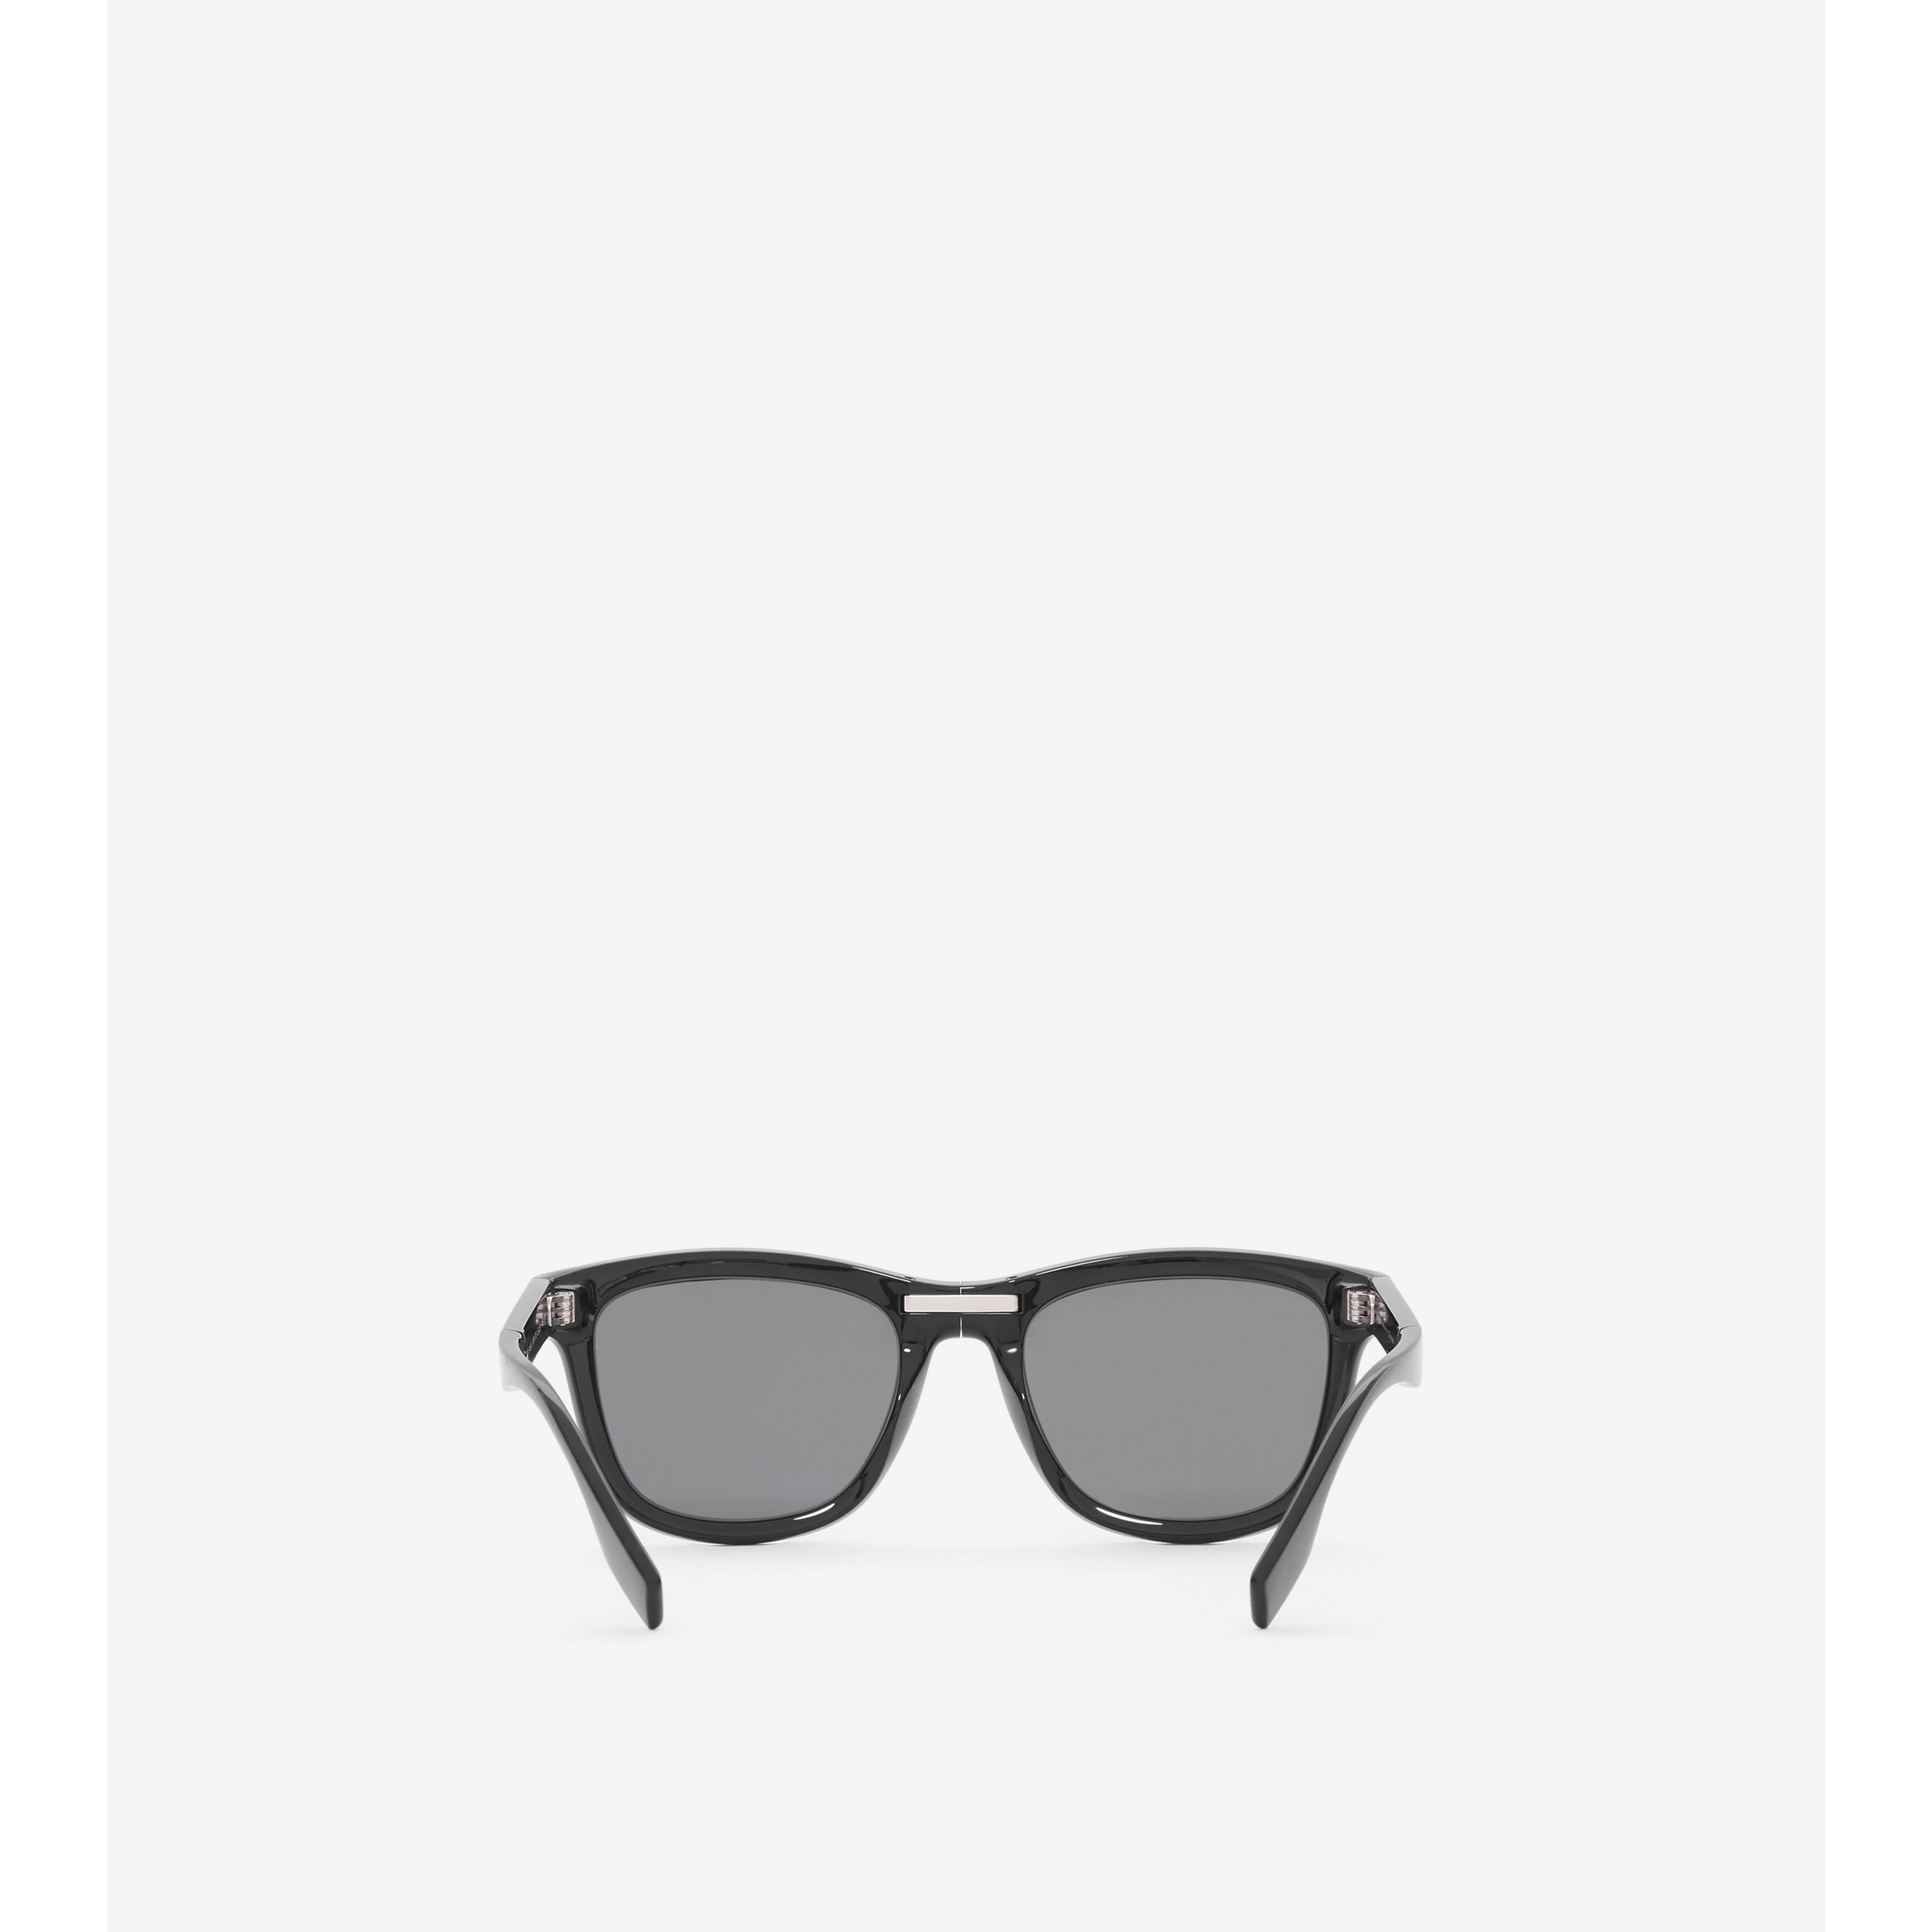 Black Men Sunglasses - weeklybangalee.com